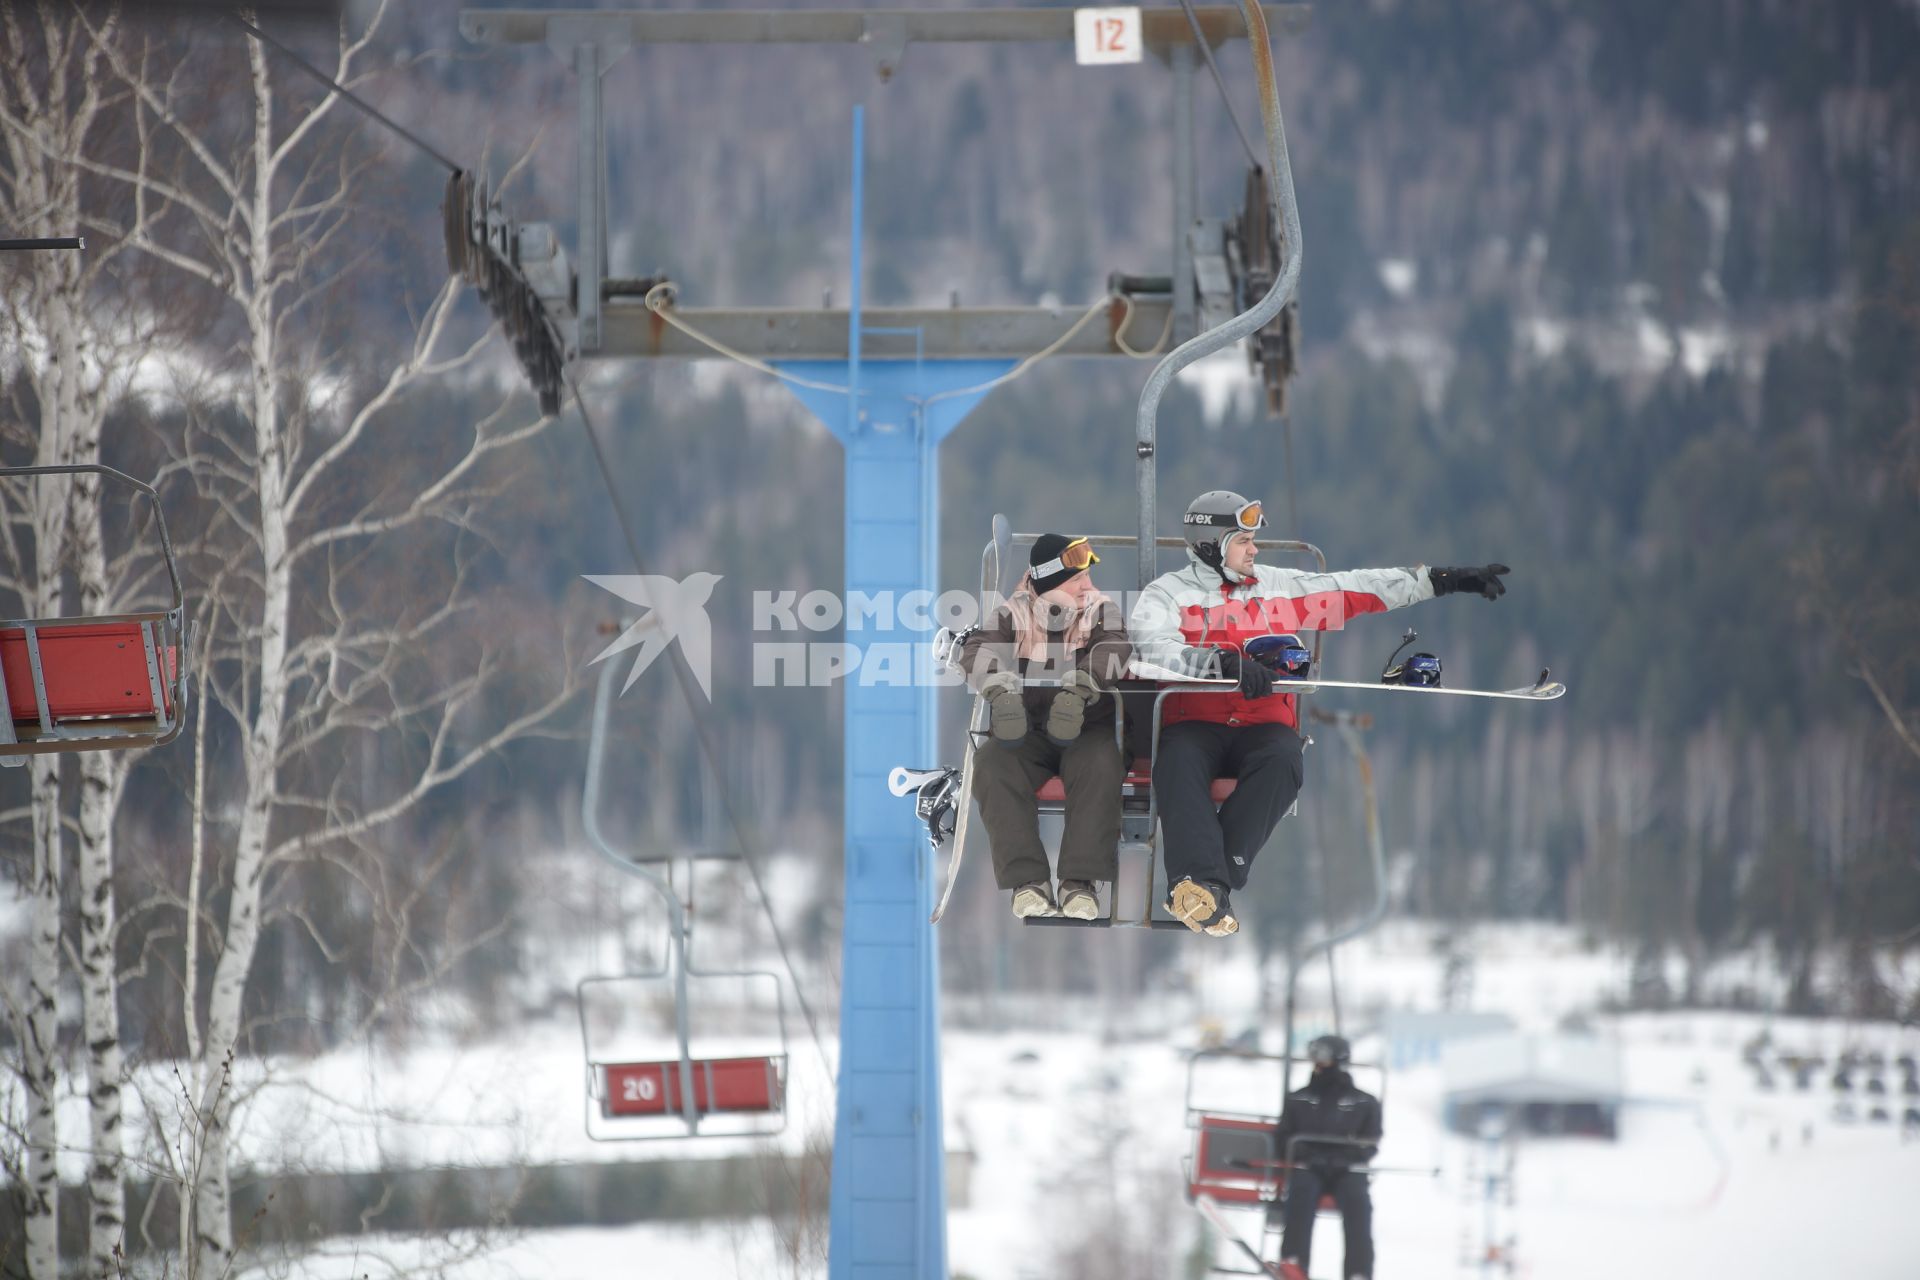 Закрытие горнолыжного сезона на горе Ежовая в Свердловской области. Горнолыжники на подъемнике.